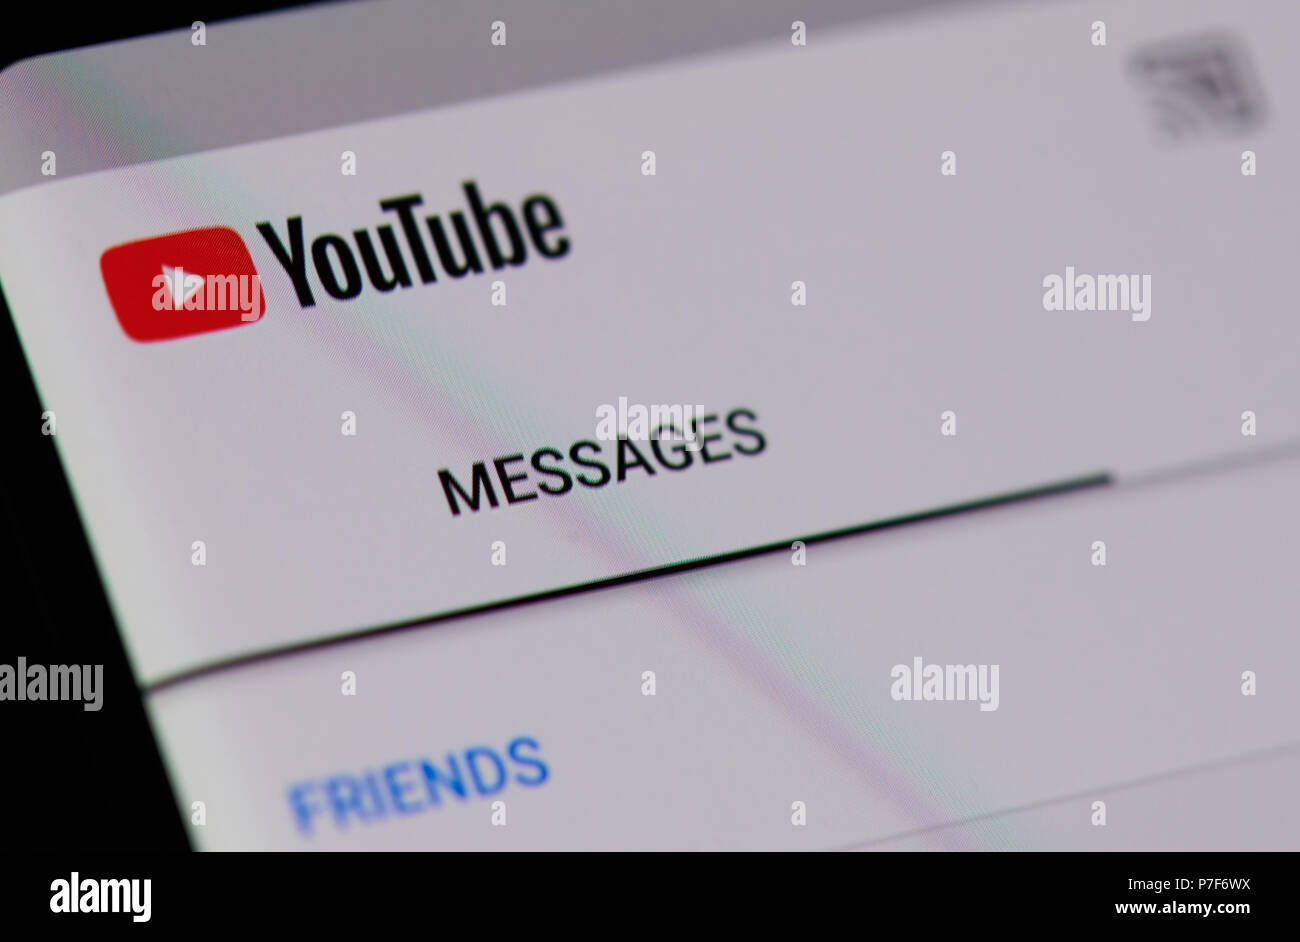 Nueva York, Estados Unidos - 5 de julio de 2018: Youtube menú mensajes en la pantalla del smartphone vista cercana de fondo Foto de stock